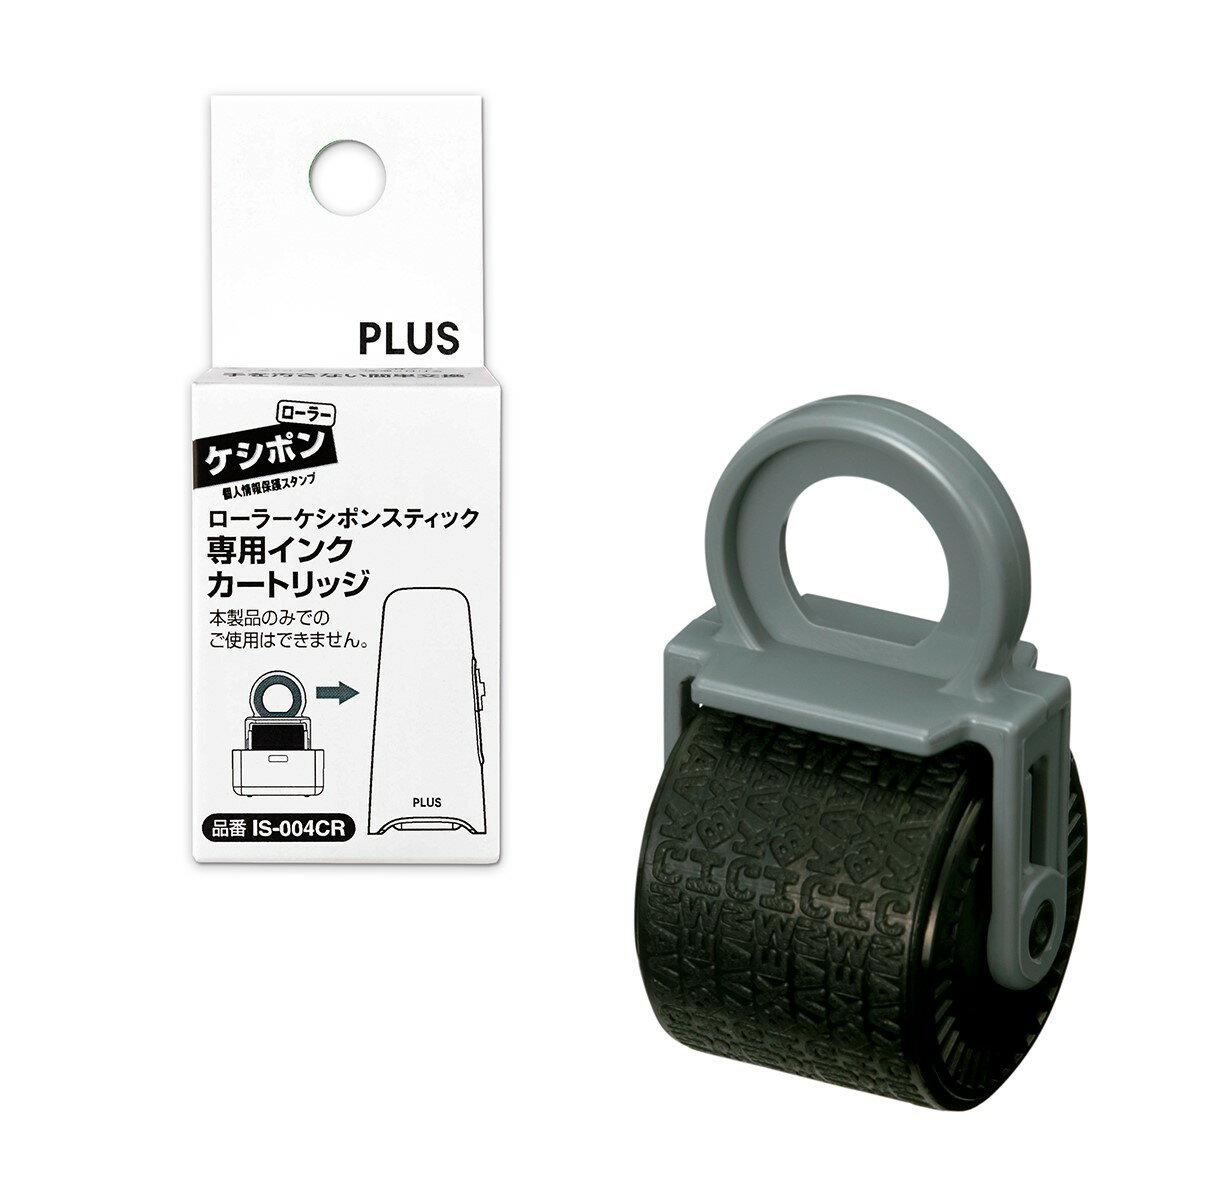 PLUS 普樂士 IS-004CR Stick 滾輪個人資料保護章卡匣 (39-188)